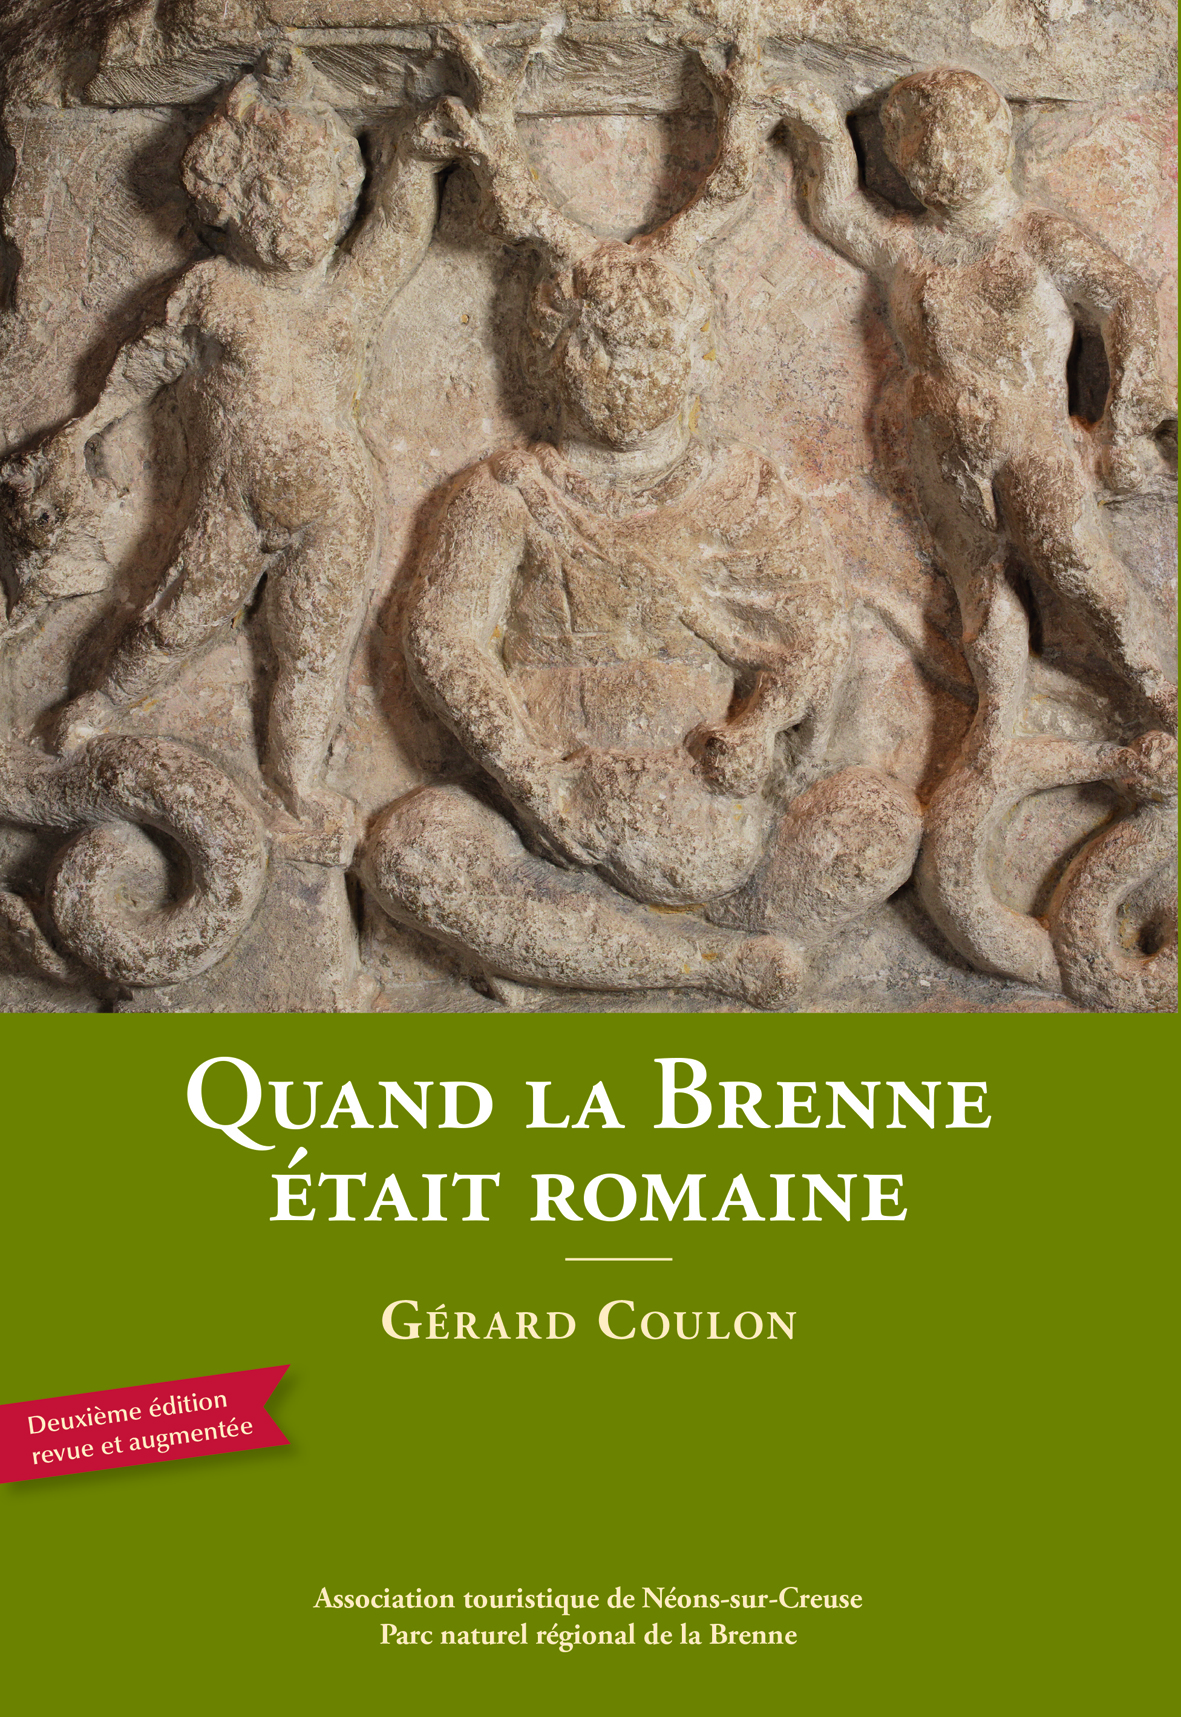 Quand la Brenne était romaine, 2014, 2e éd. rev. et augm., 176 p.